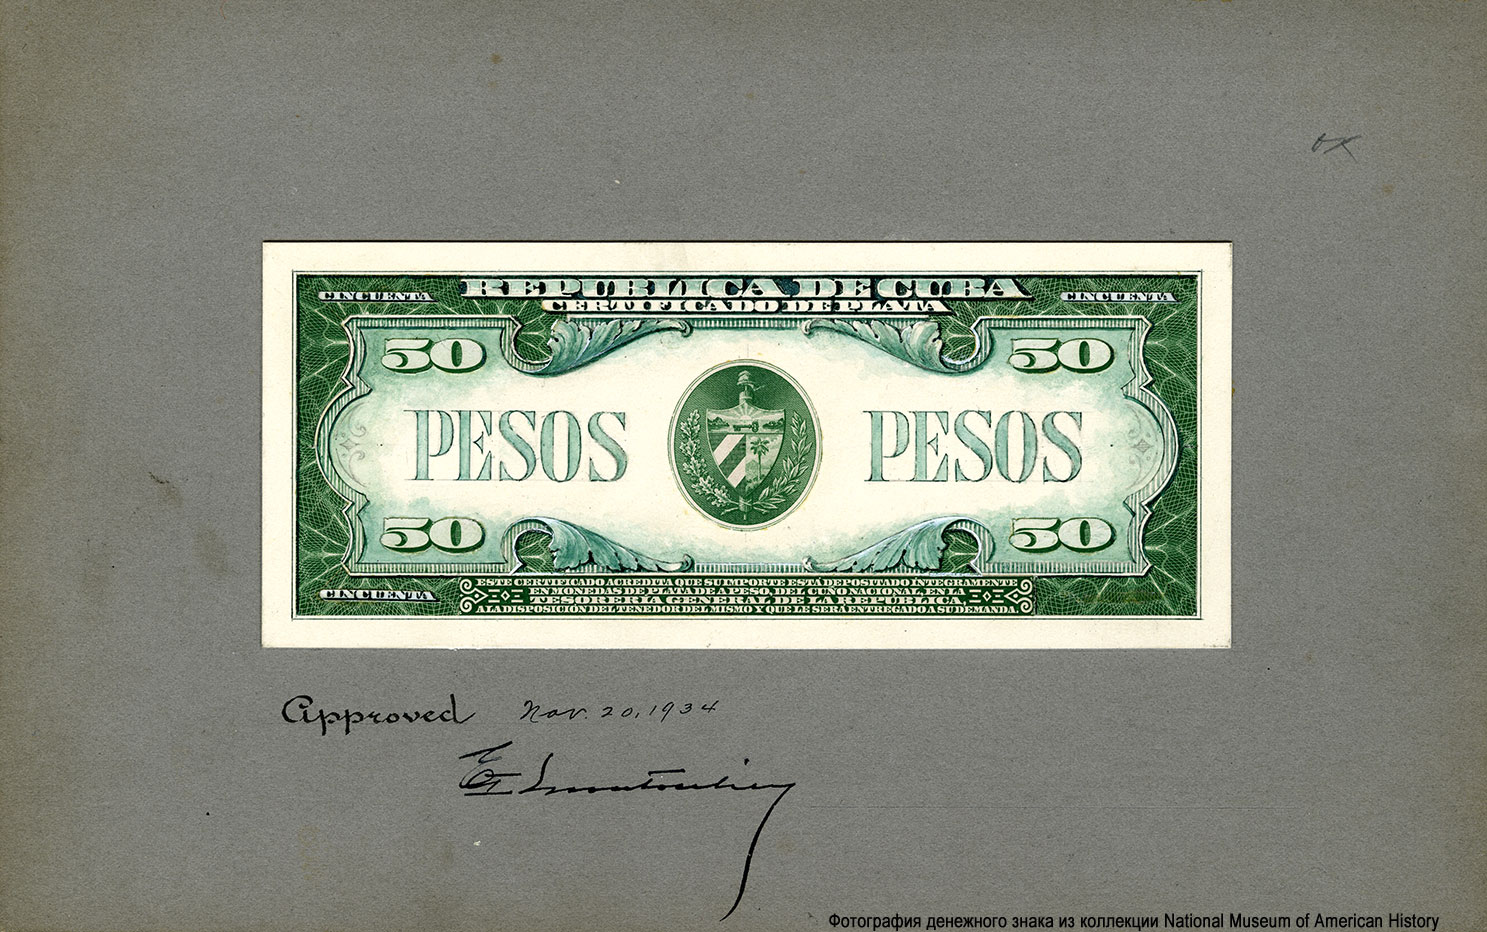 República de Cuba 50 Pesos. Progress Proofs of BEP issued Silver Certificates